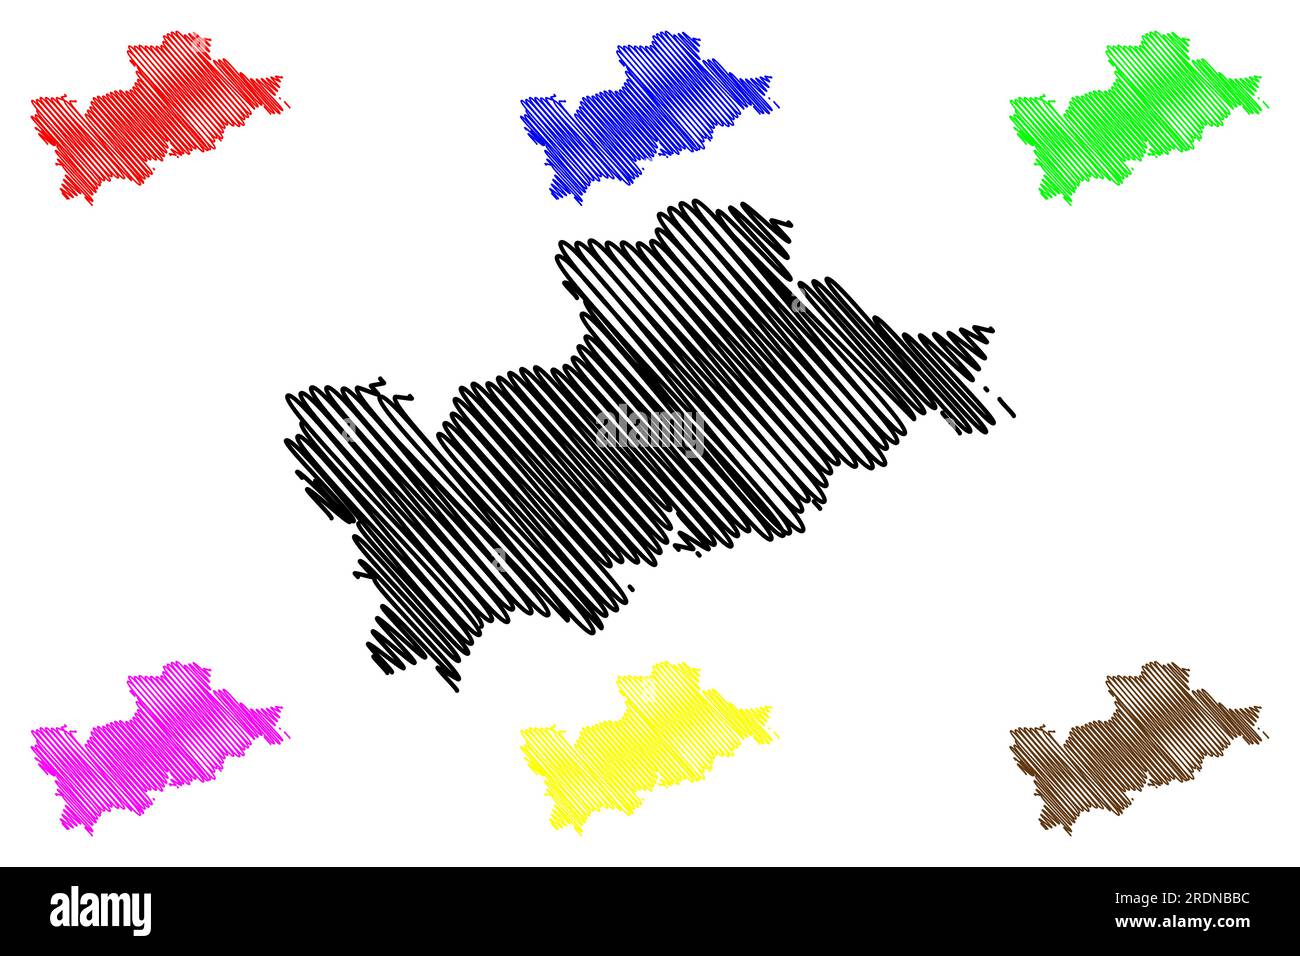 Vettore cartografico del distretto non metropolitano di Mid Devon (Regno Unito di Gran Bretagna e Irlanda del Nord, contea cerimoniale Devon o Devonshire, Inghilterra) Illustrazione Vettoriale